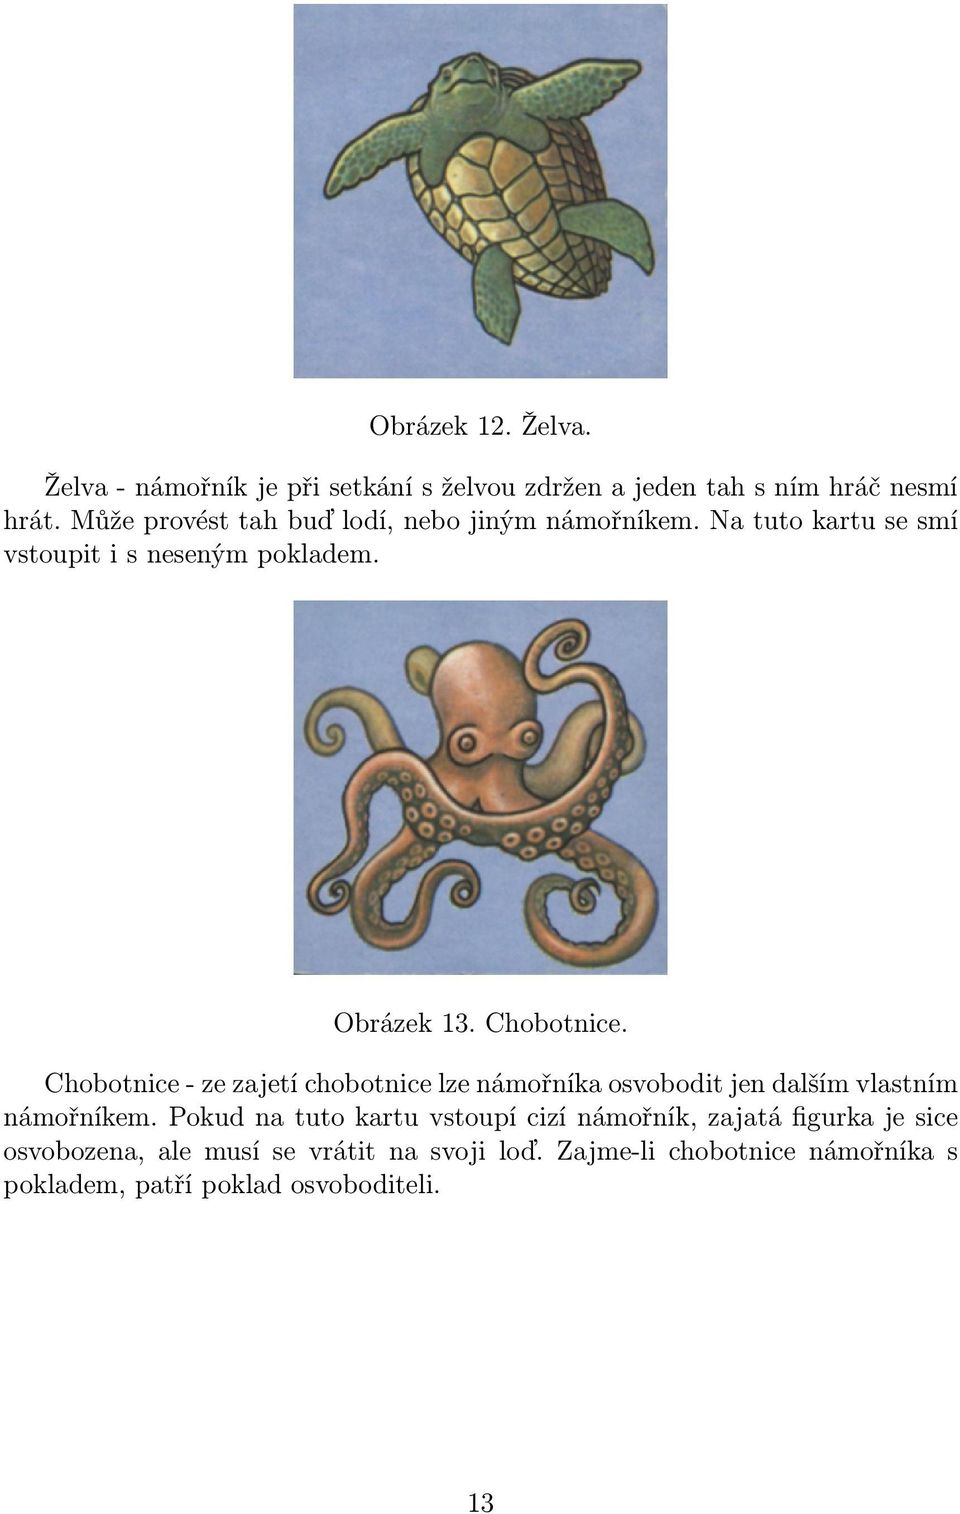 Chobotnice - ze zajetí chobotnice lze námořníka osvobodit jen dalším vlastním námořníkem.